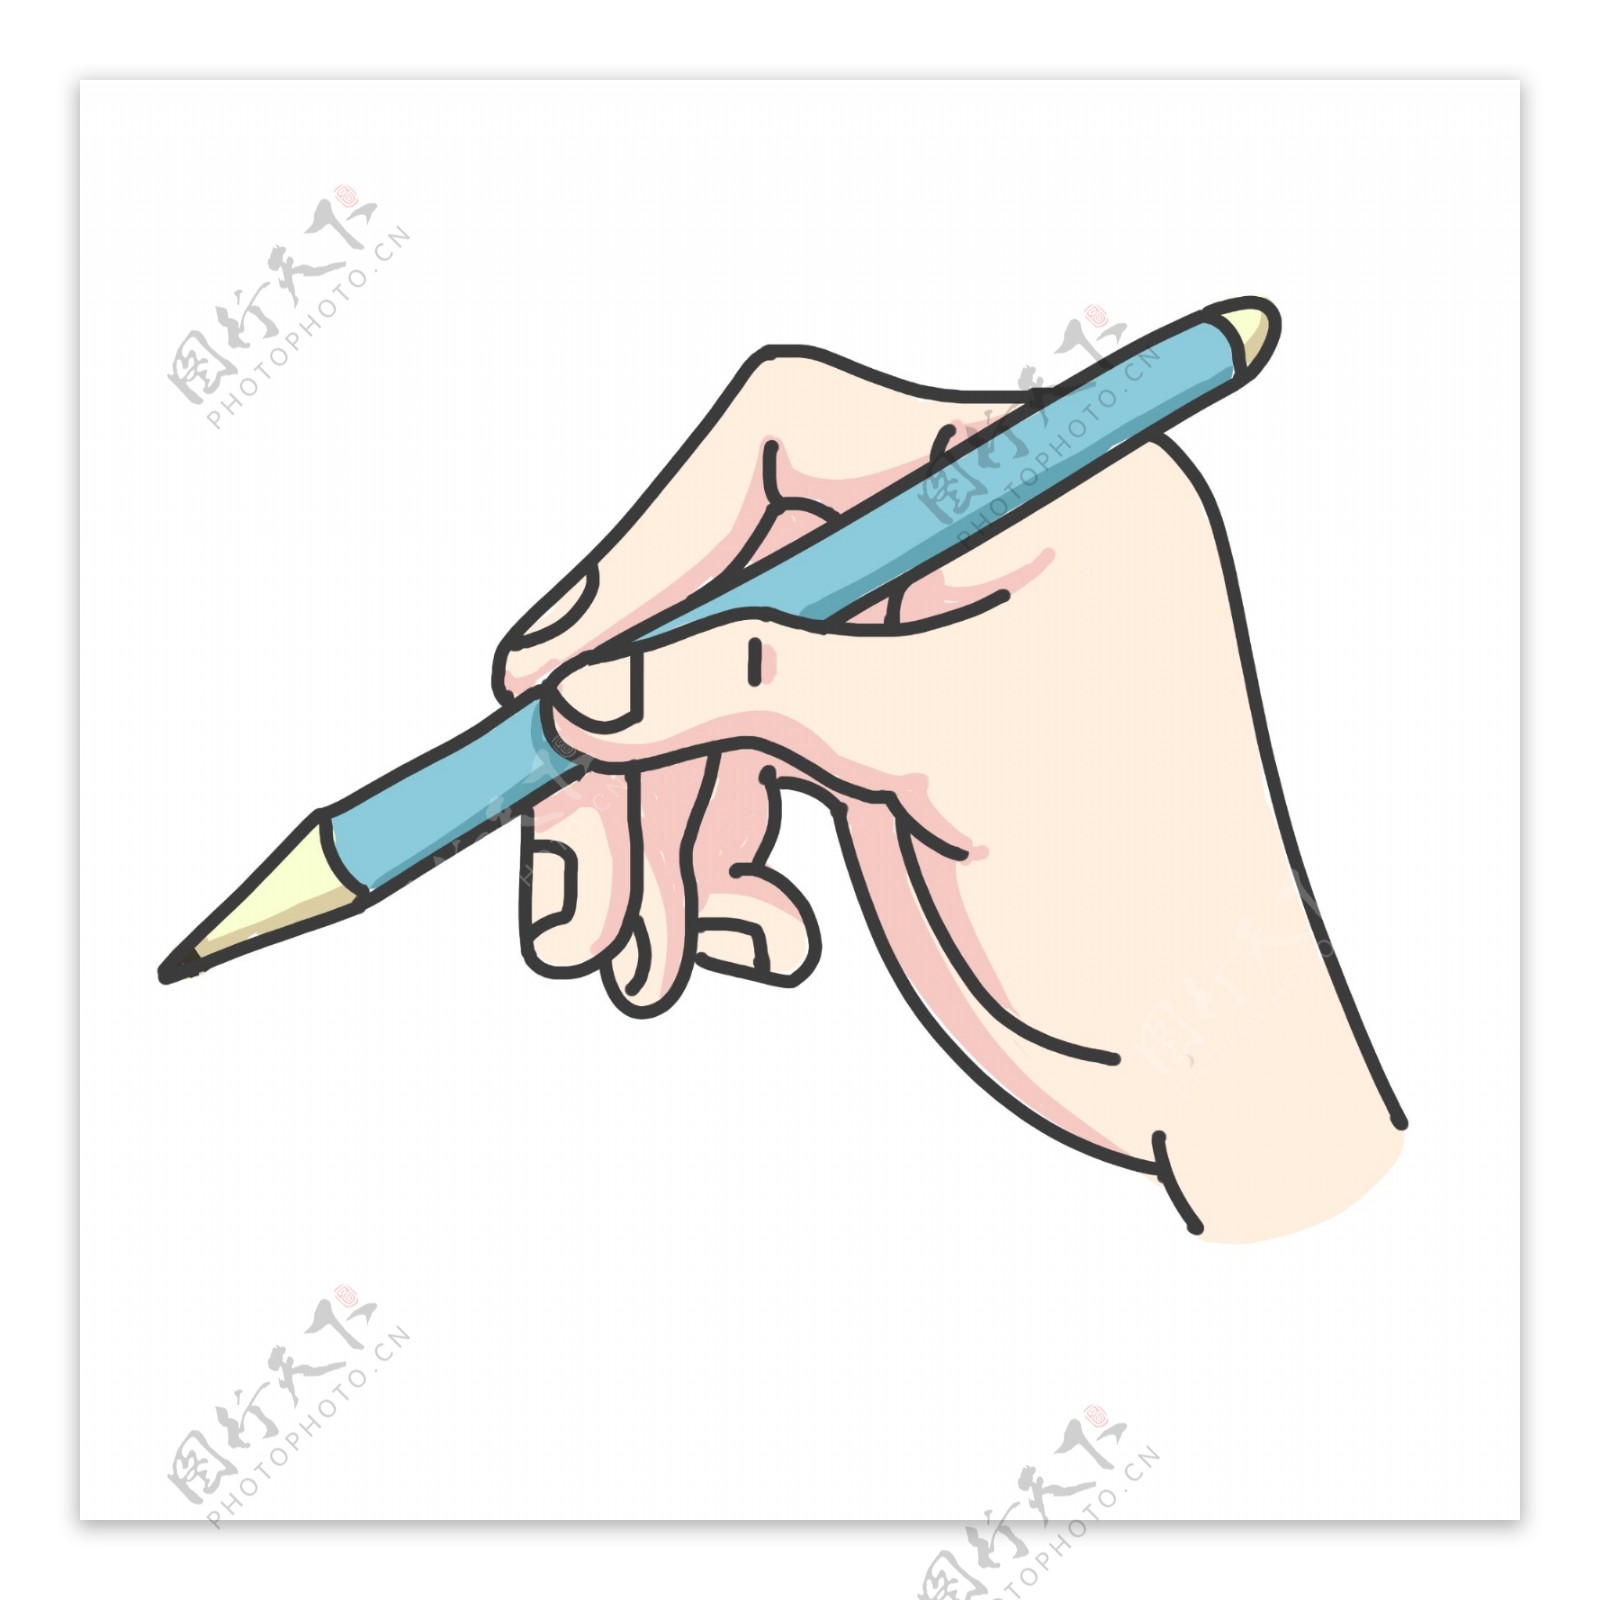 写字拿笔的手势插画